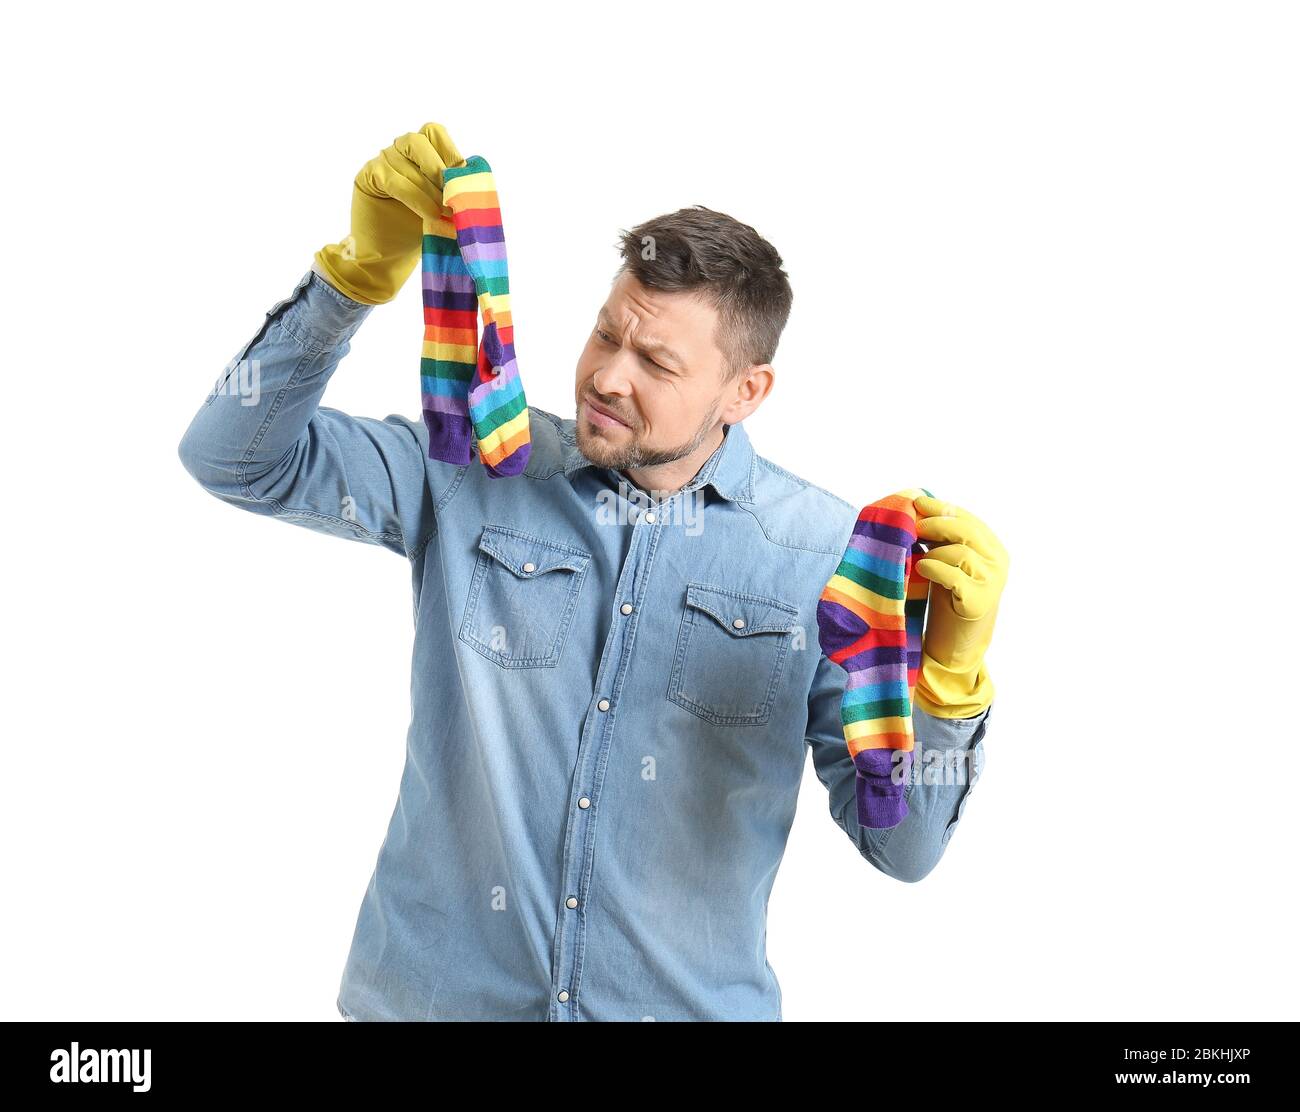 Homme décontent avec des chaussettes sales sur fond blanc Photo Stock -  Alamy